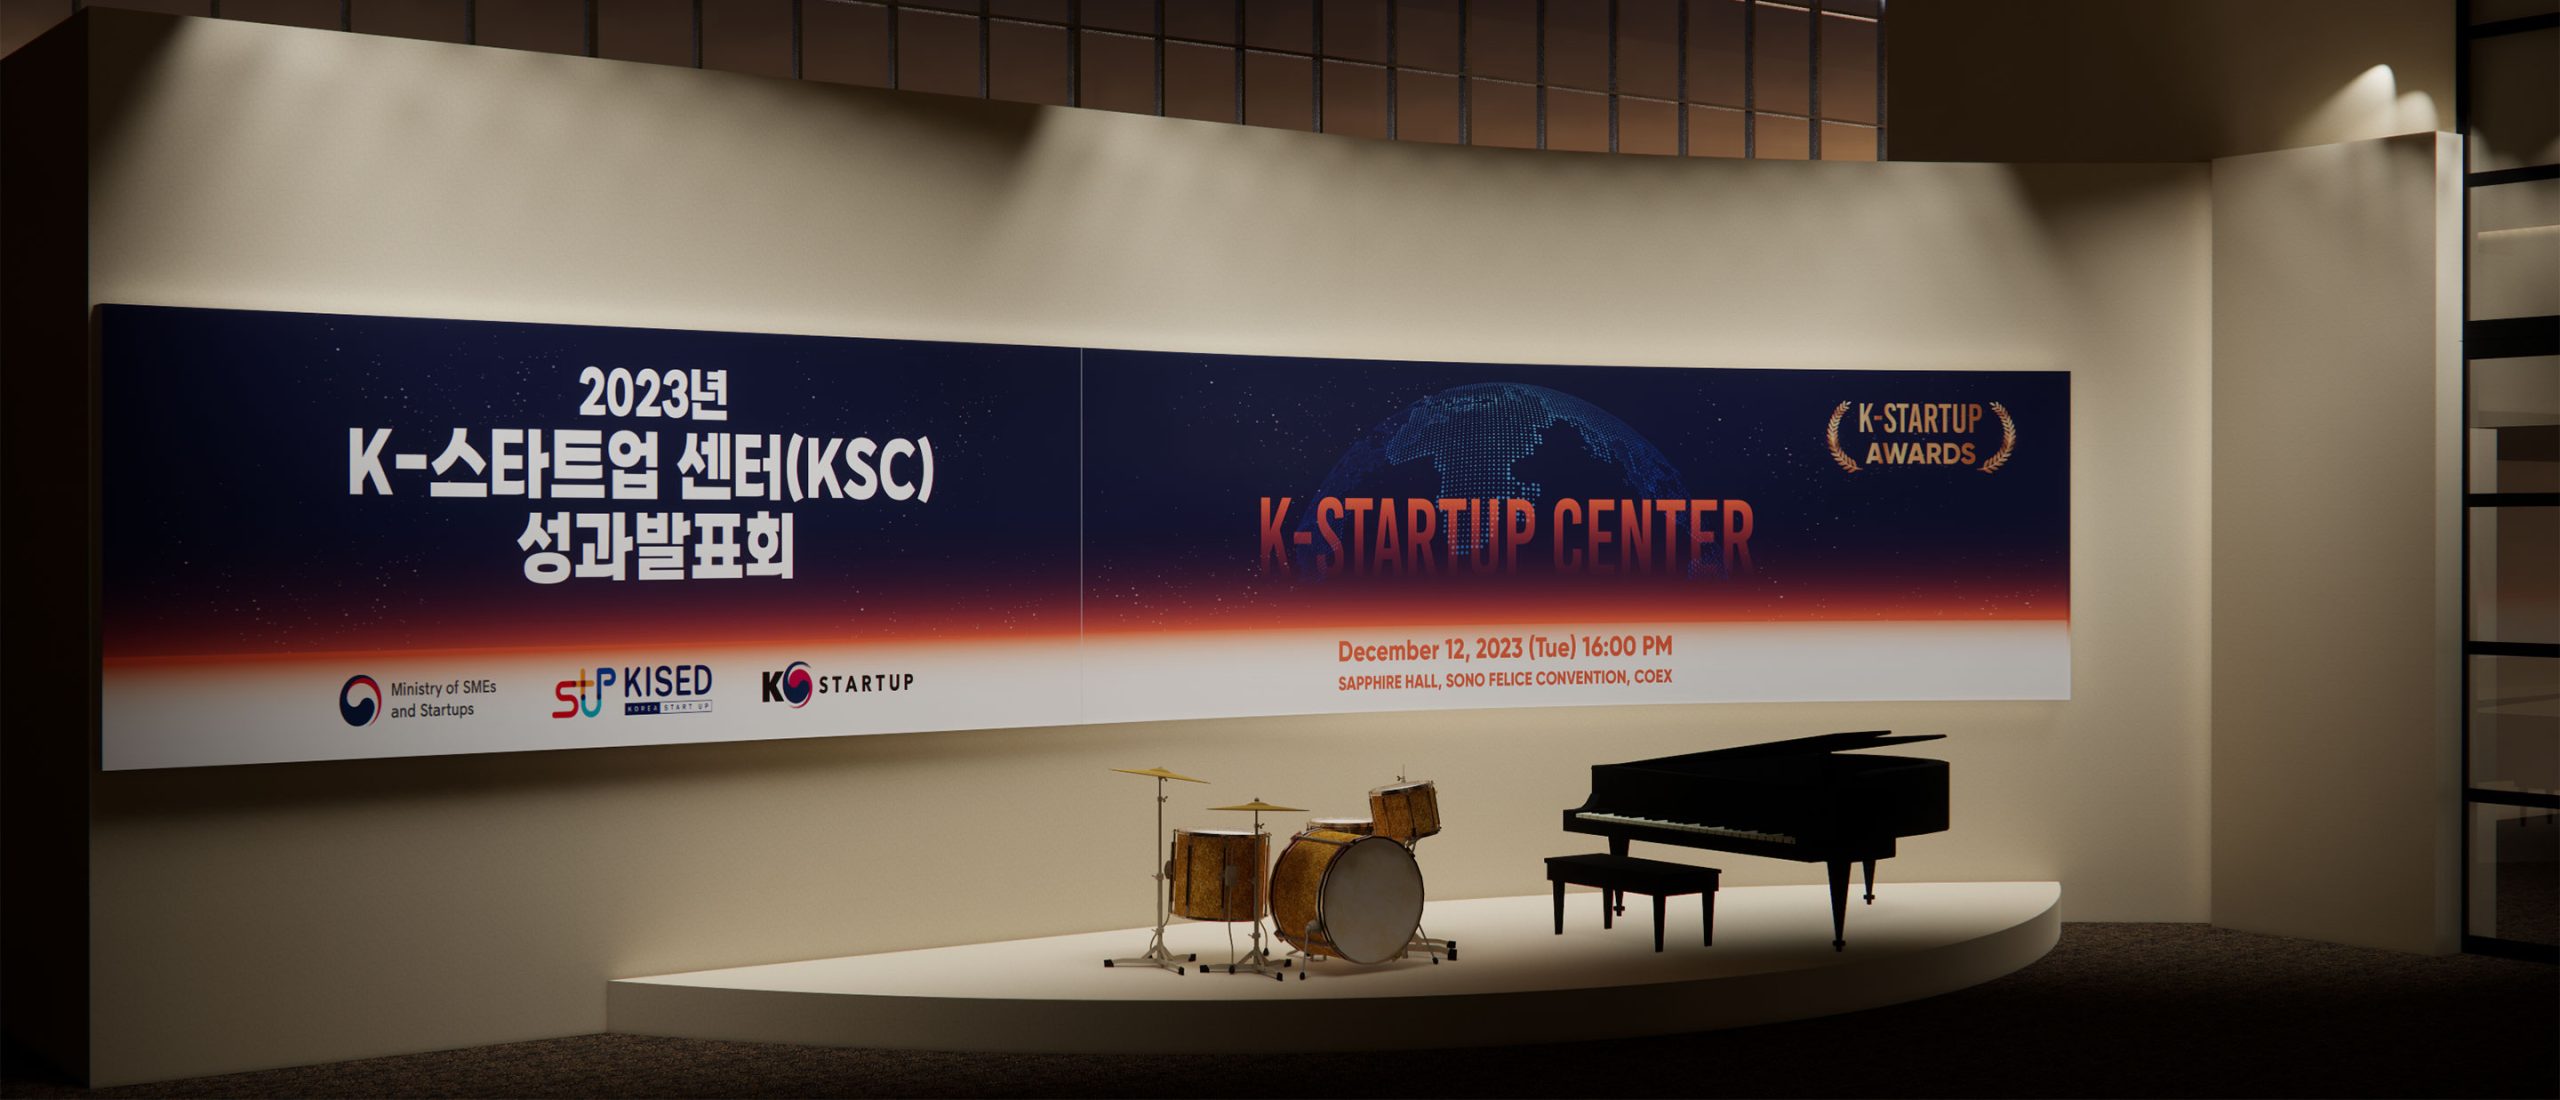 2023년 K-스타트업 센터(KSC) 성과발표회_제안